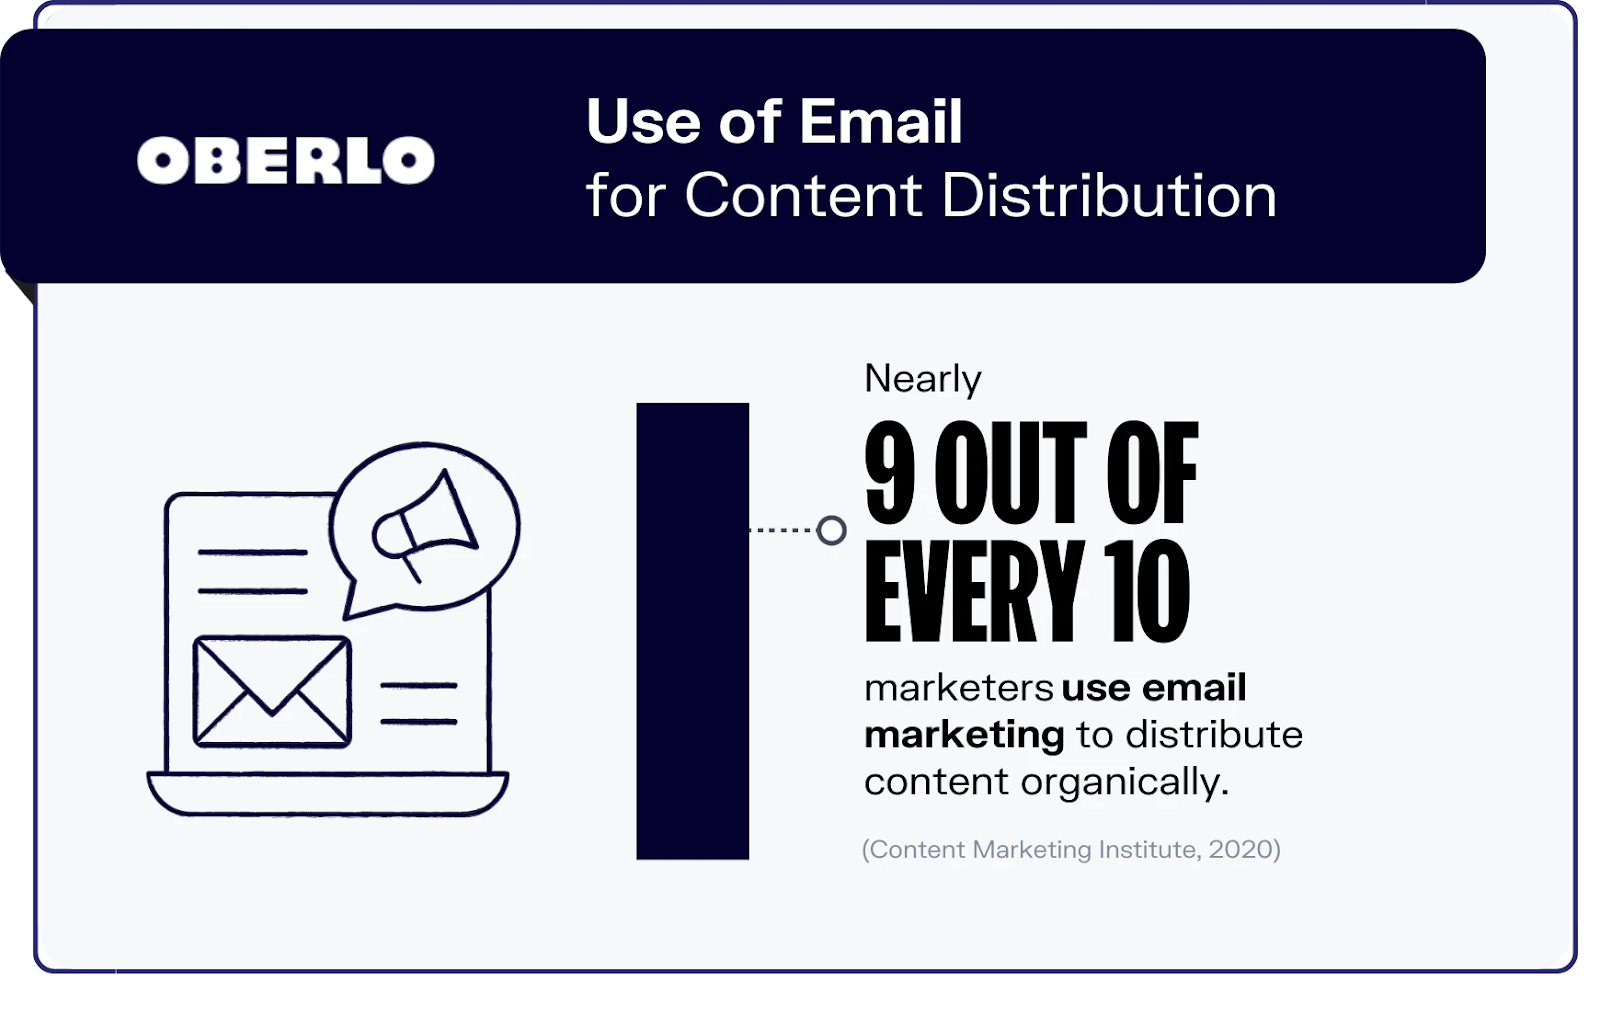 Data yang menunjukkan bahwa manfaat email marketing masih diandalkan sampai sekarang